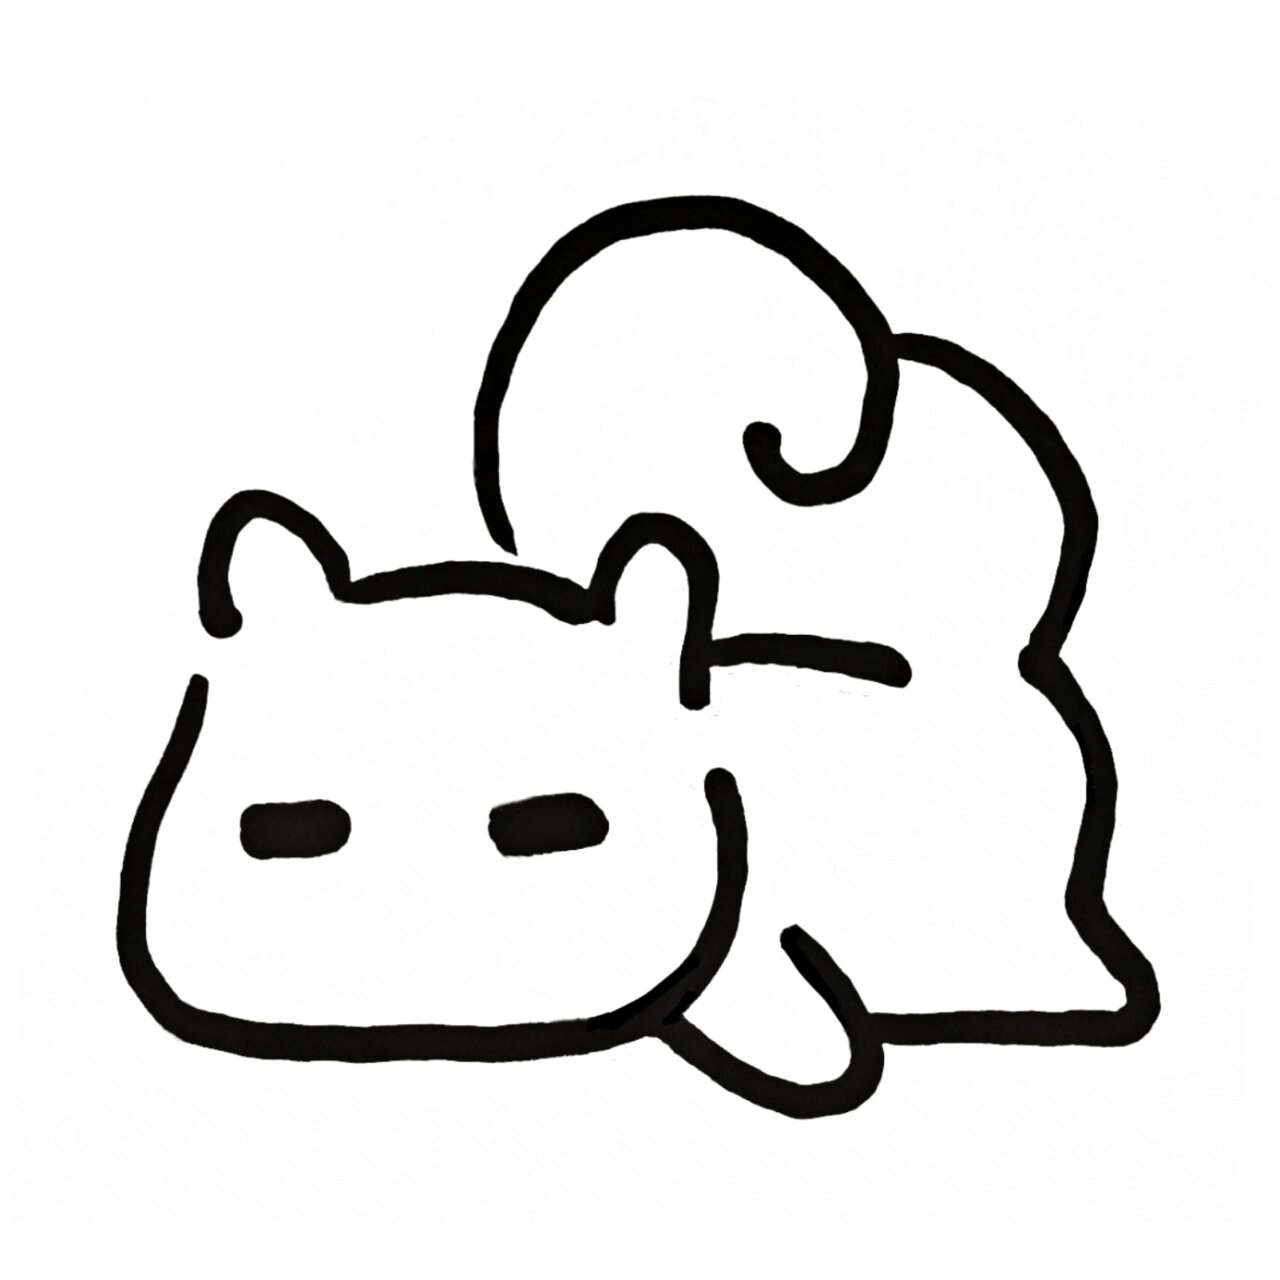 极简手绘表情动物涂鸦:9715可爱小松鼠